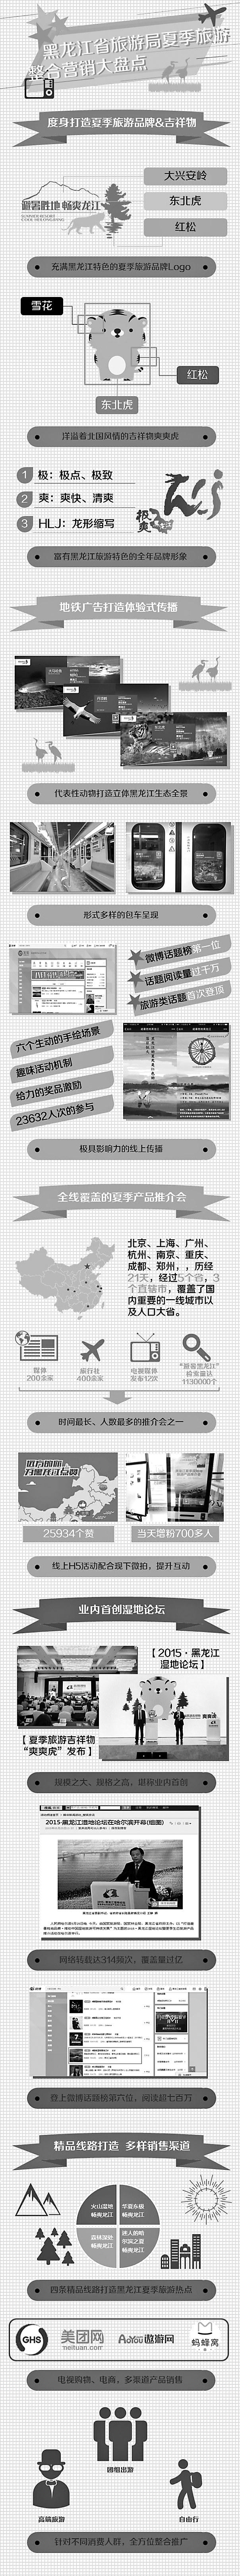 黑龙江省旅游局夏季旅游整合营销大盘点